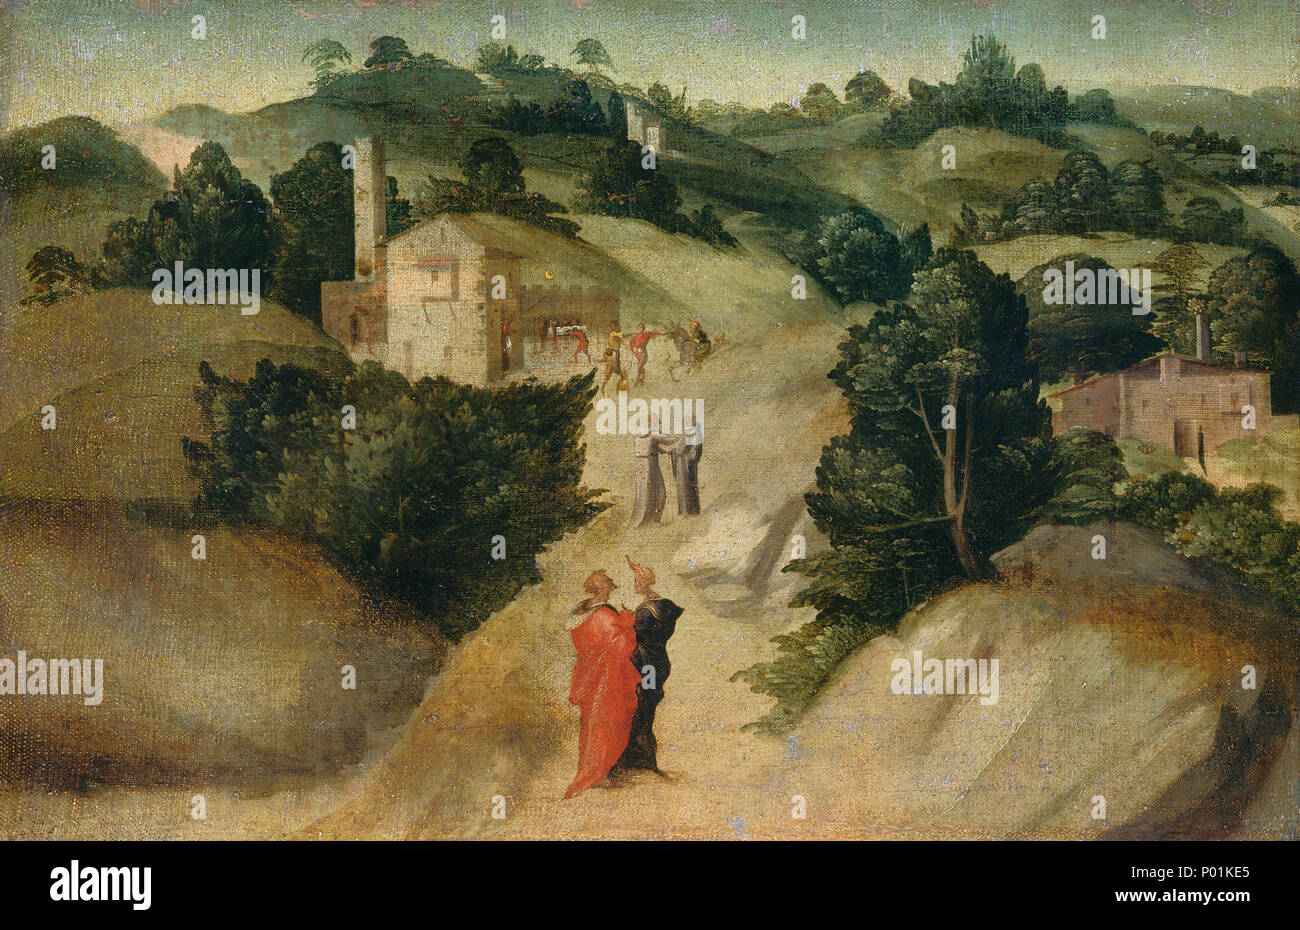 Giovanni Larciani (Maître de la Kress) Paysages (Italien, 1484 - 1527 ), des scènes de légende, probablement c. 1515/1520, huile sur toile, Samuel H. Kress Collection 21 scènes à partir d'un sc222 Légende Banque D'Images